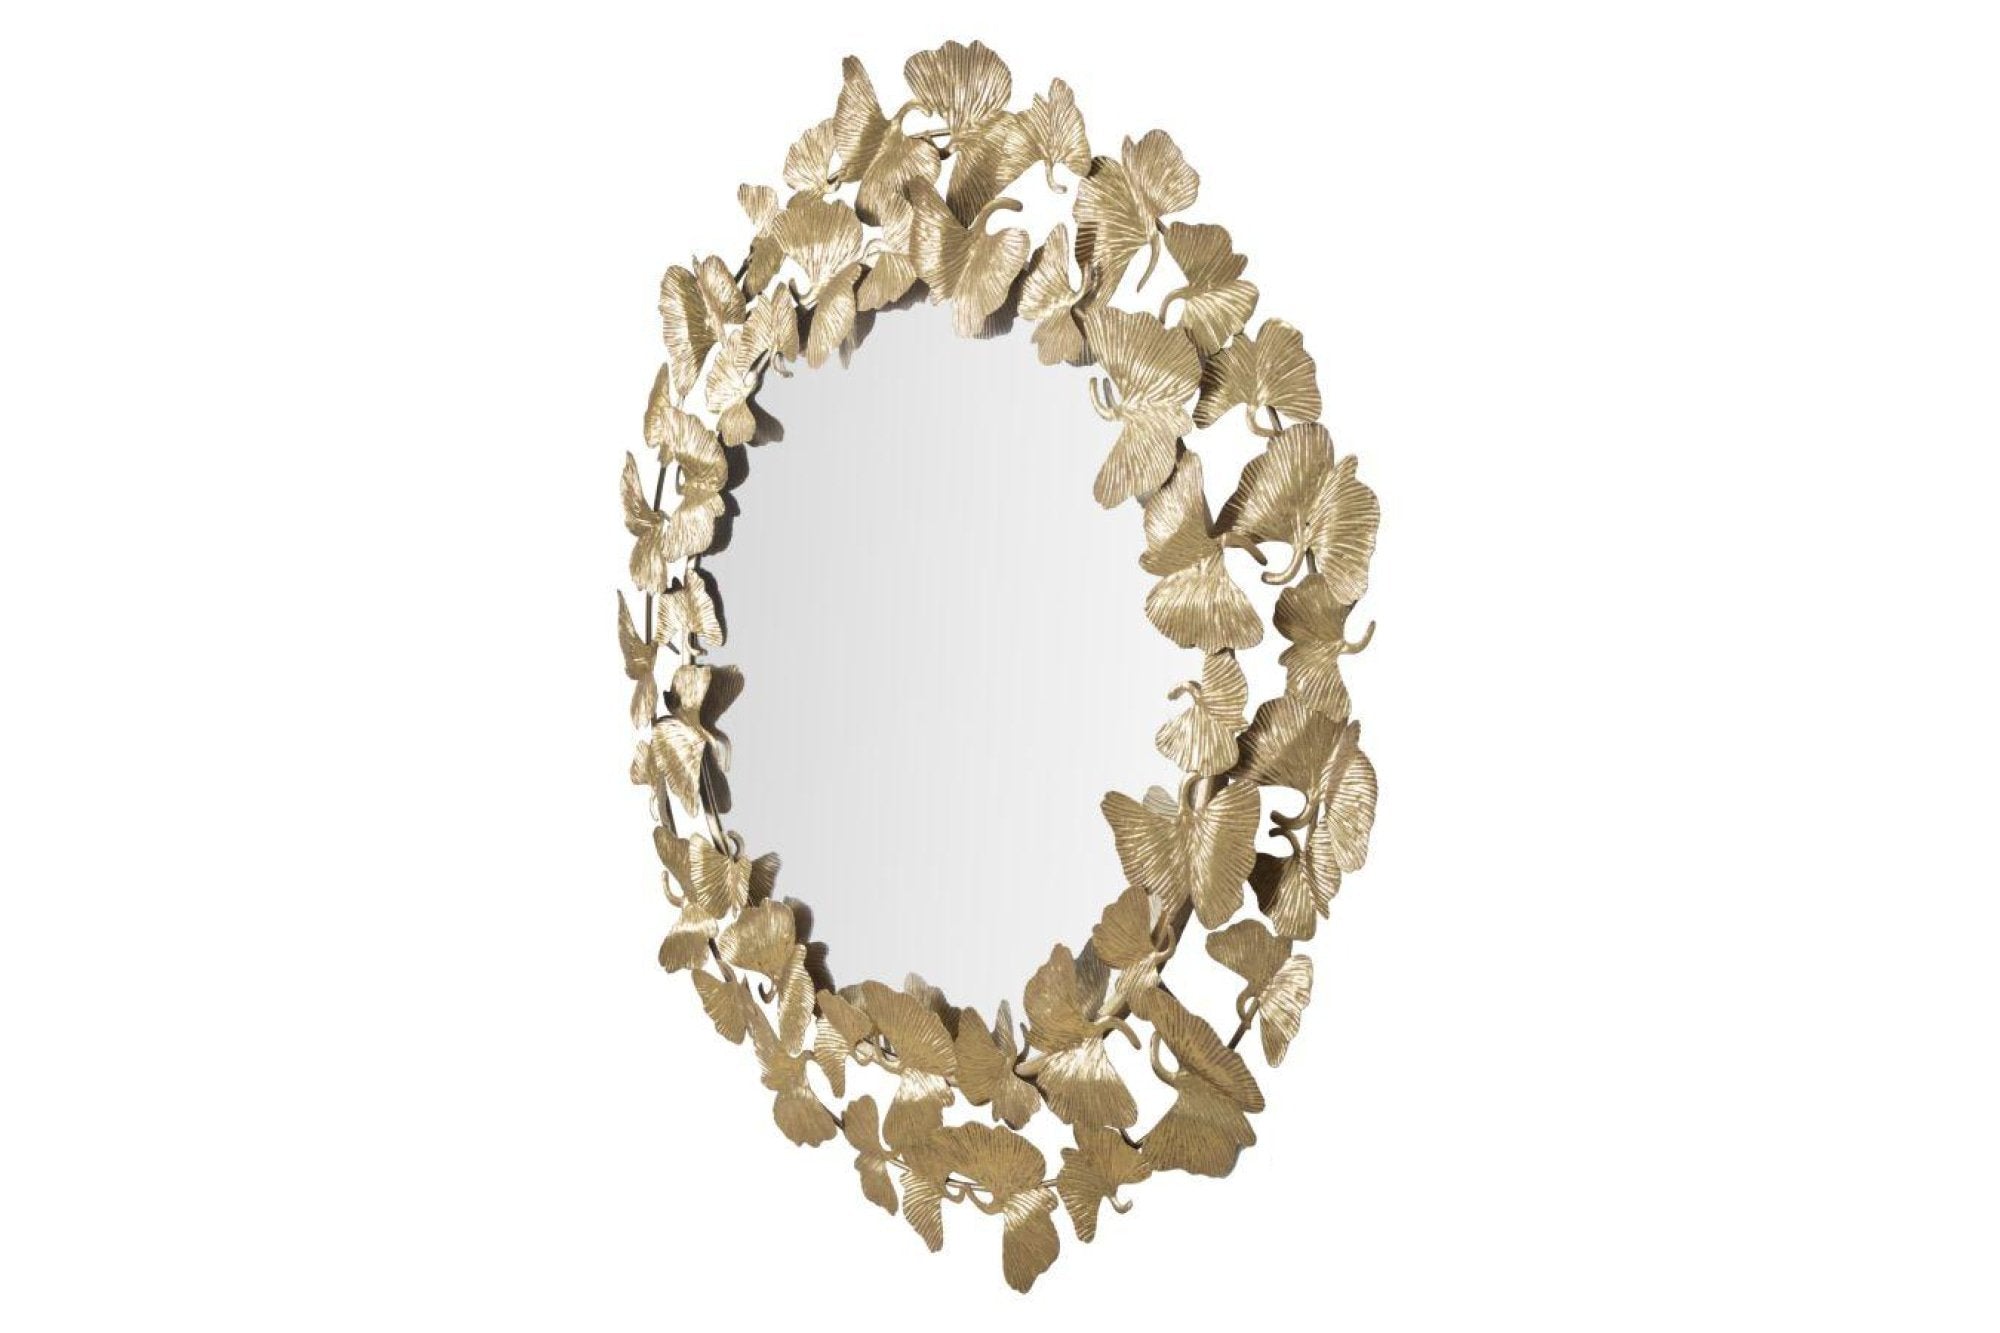 Mauro ferretti leaf round arany és tükröződő vas falitükör